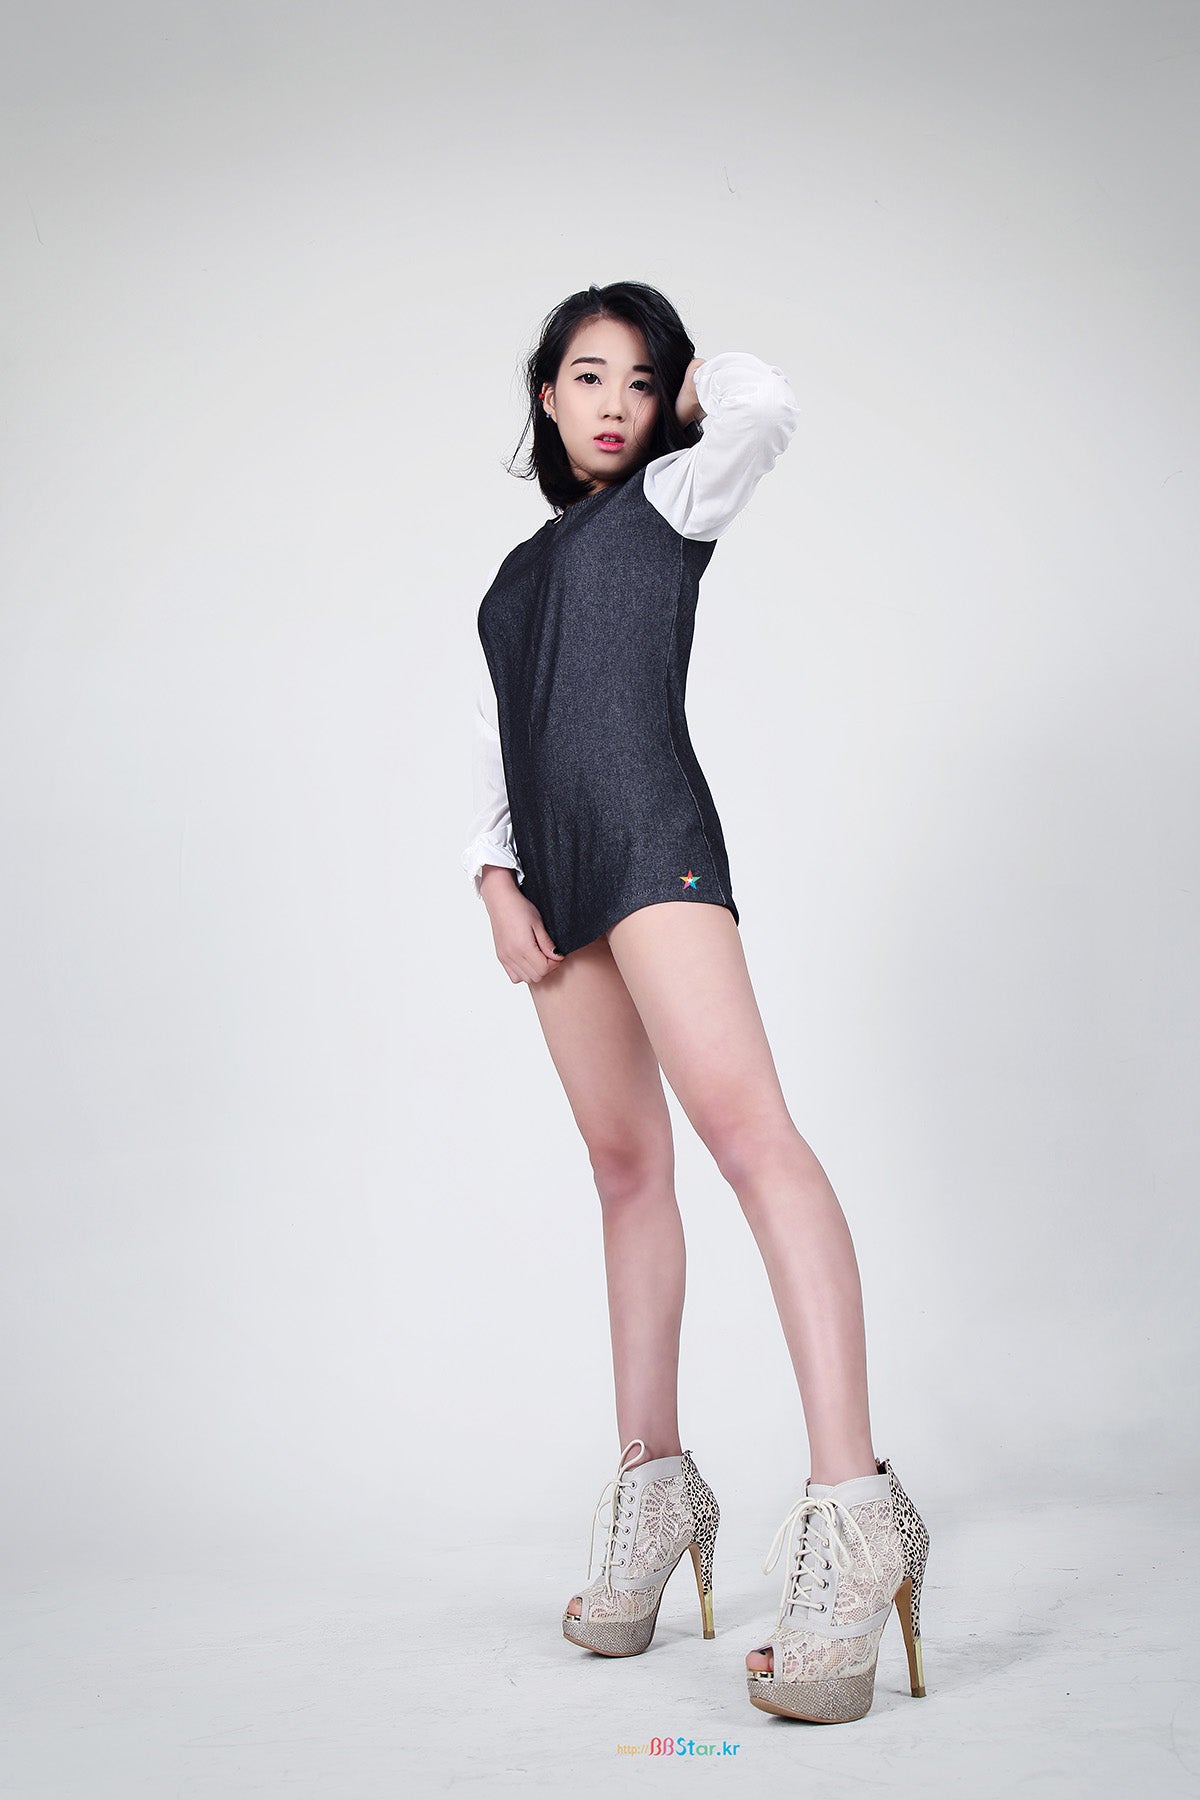 韓国美女 女性モデル SoHee セクシ美女。 | bbstarkrのブログ (bbstar.kr)